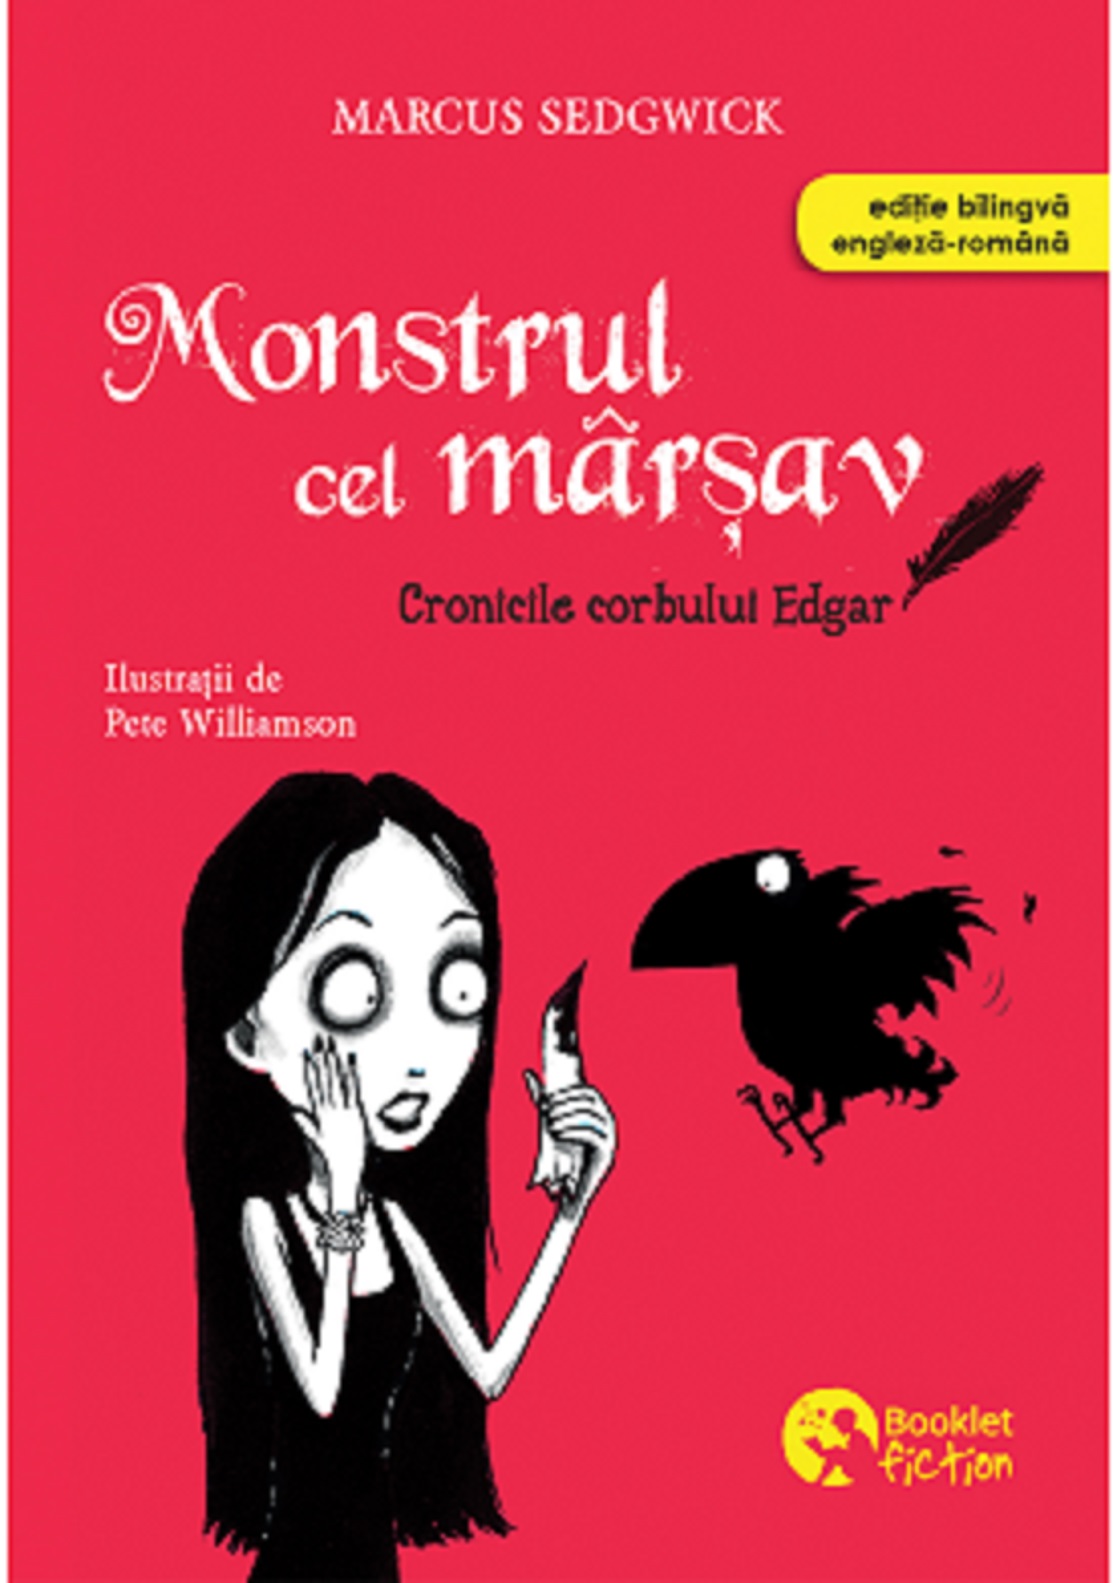 Coperta cărții: Monstrul cel marsav - lonnieyoungblood.com